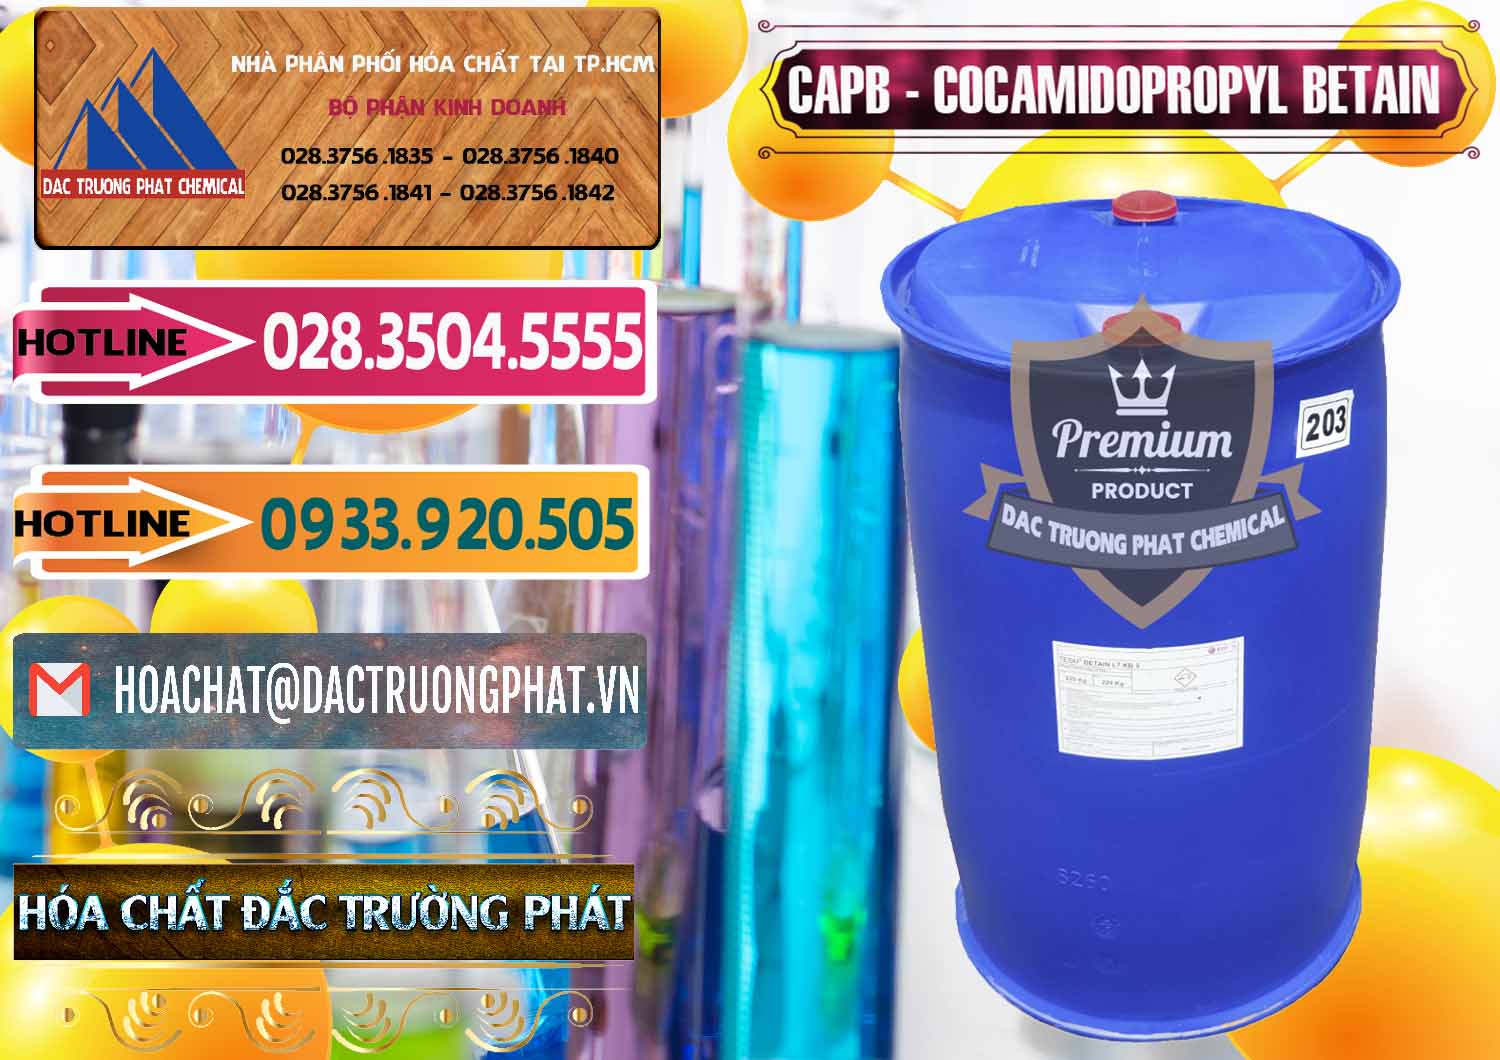 Chuyên bán _ phân phối Cocamidopropyl Betaine - CAPB Tego Indonesia - 0327 - Đơn vị chuyên phân phối & cung ứng hóa chất tại TP.HCM - dactruongphat.vn